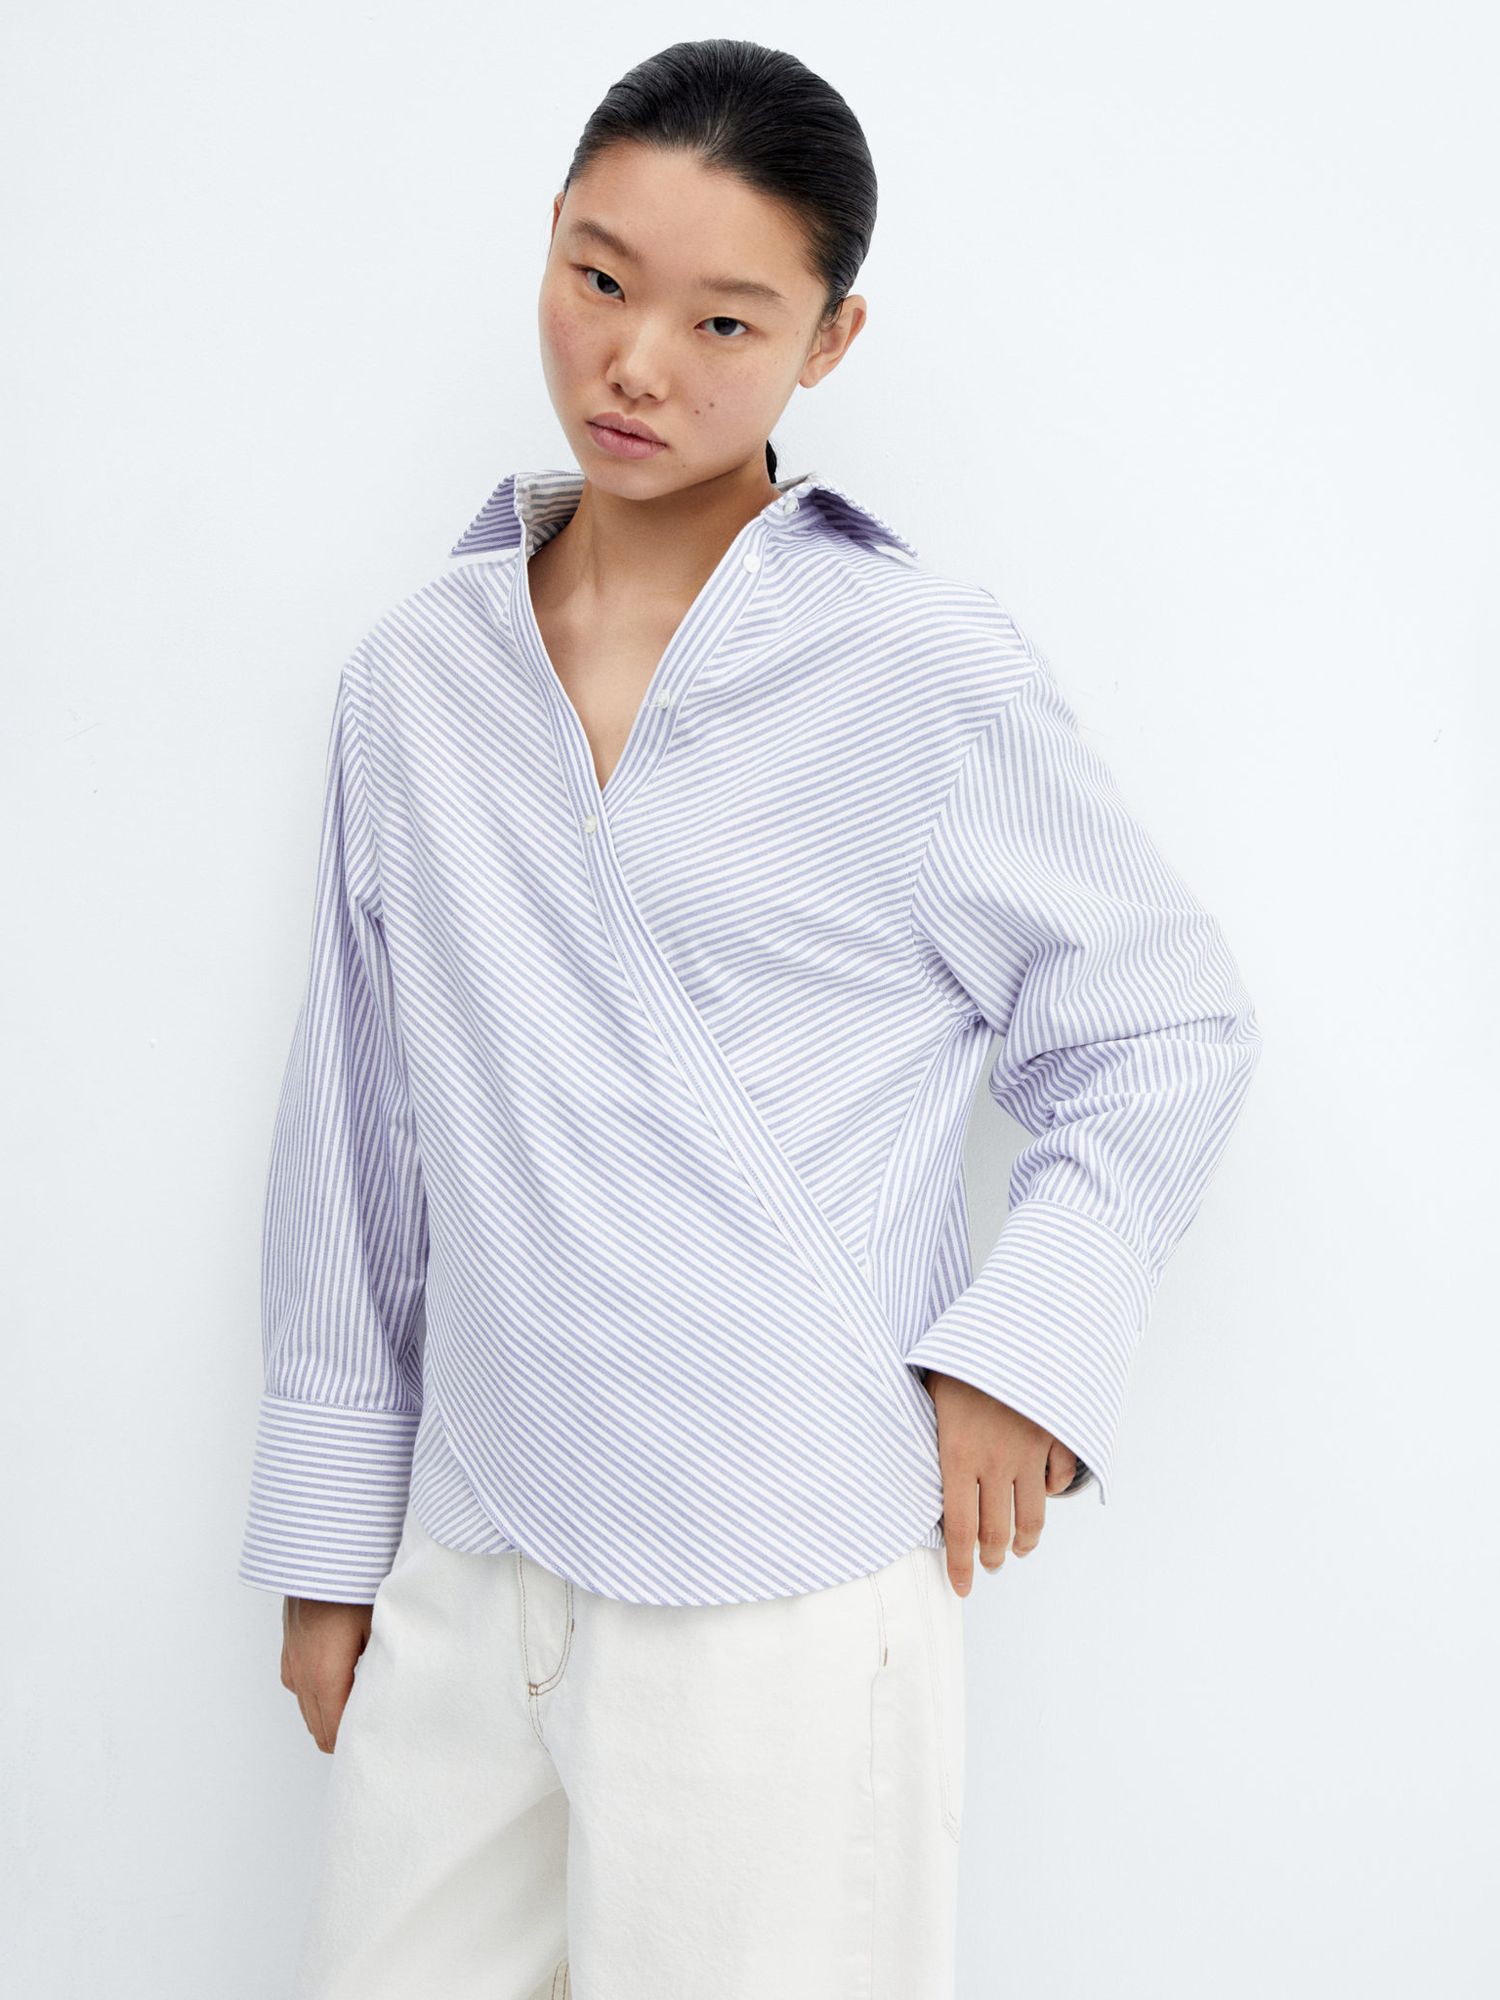 Mango Urban Stripe Long Sleeve Shirt, Medium Blue/White at John